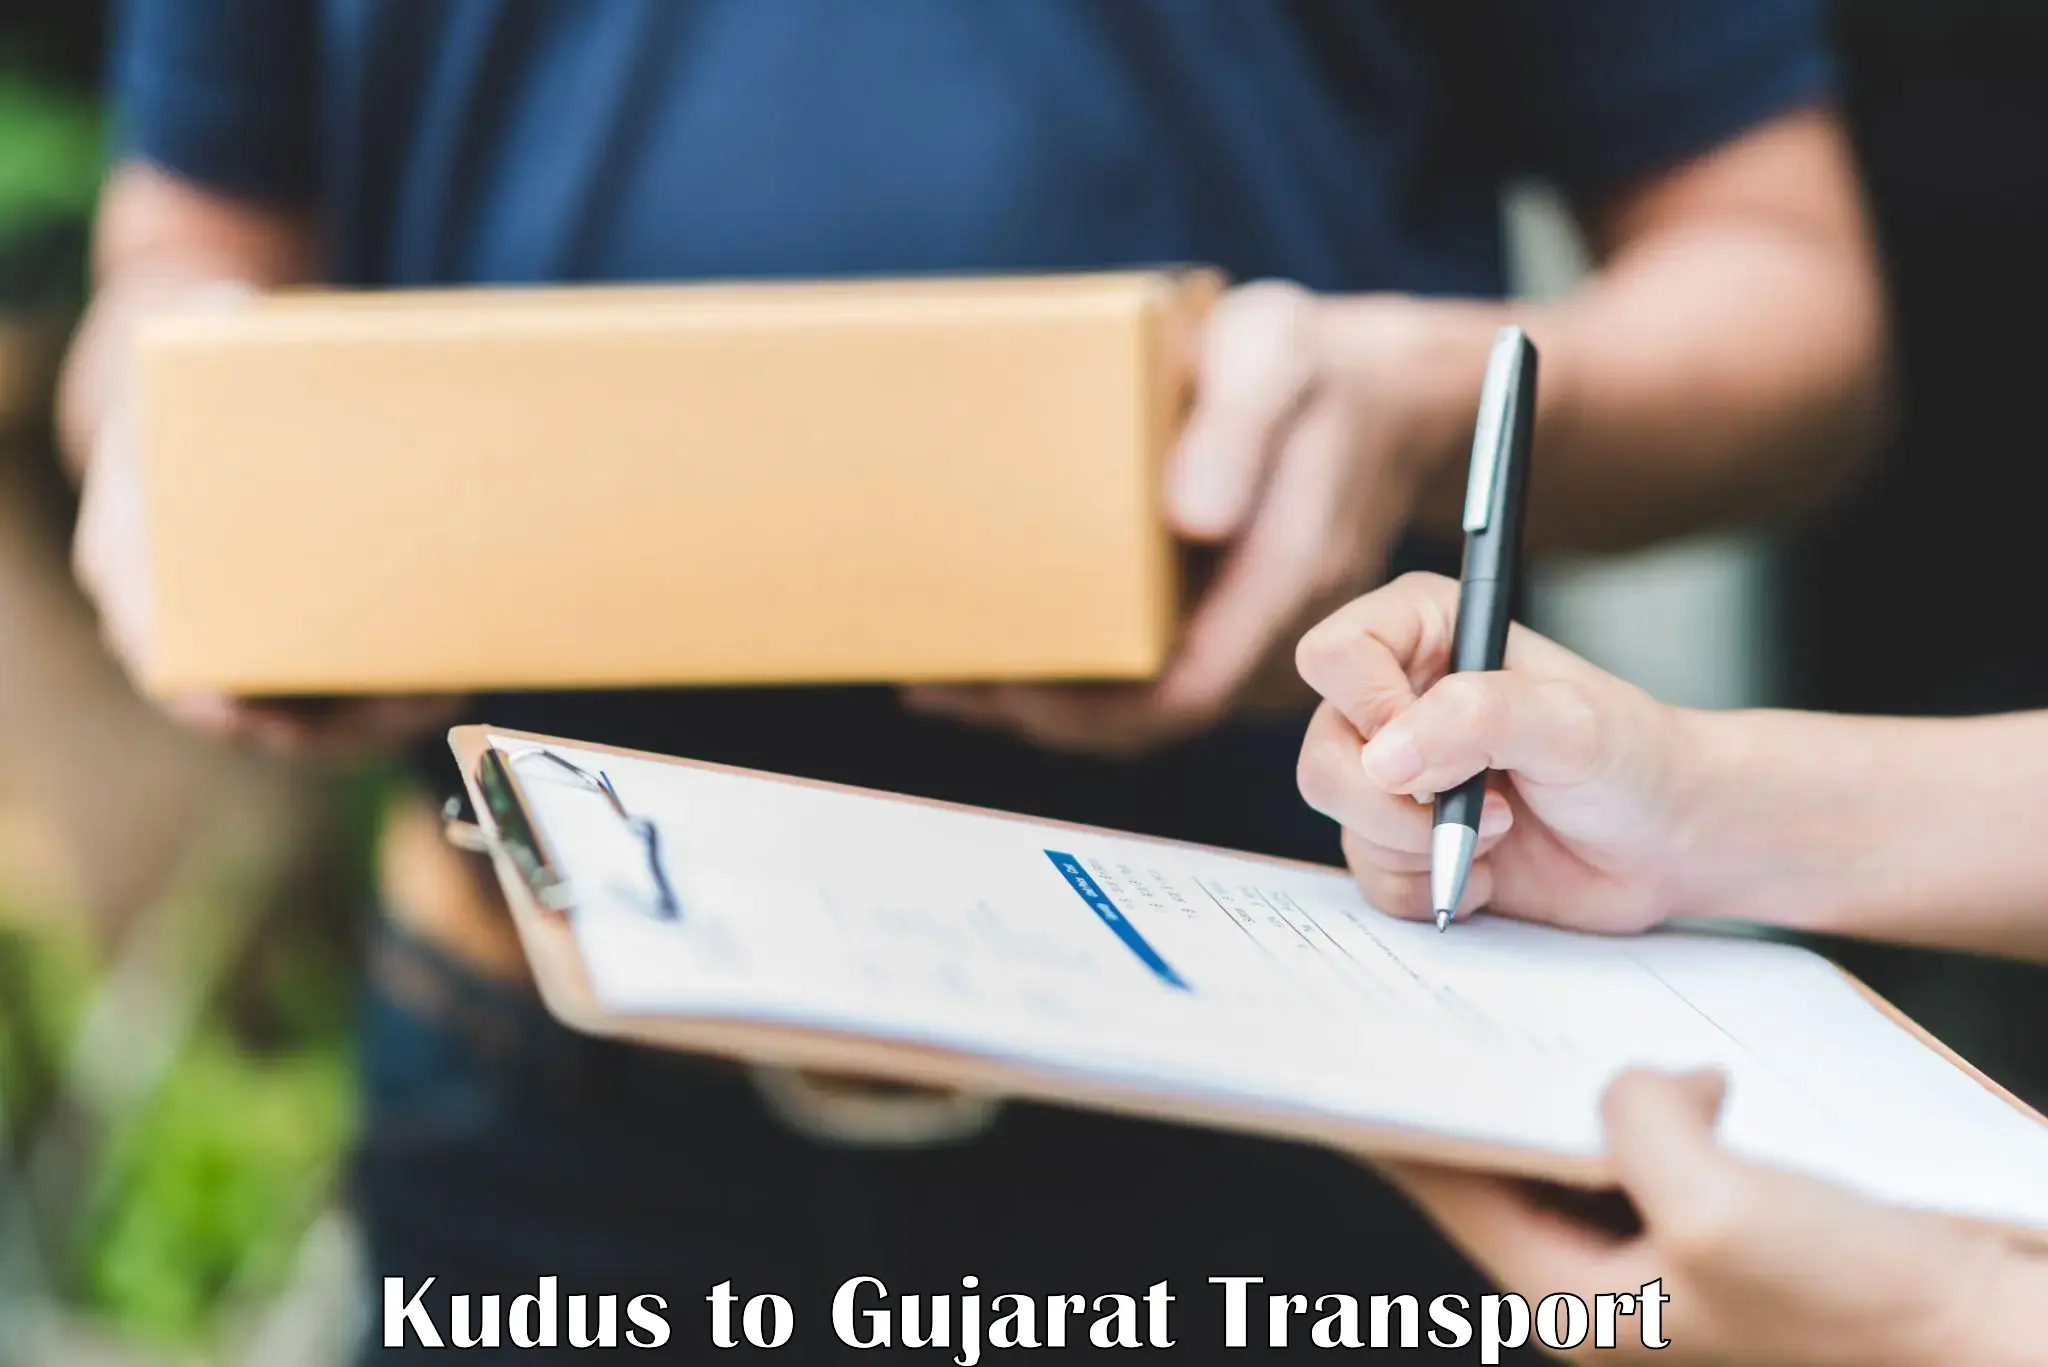 Daily transport service Kudus to Tarapur